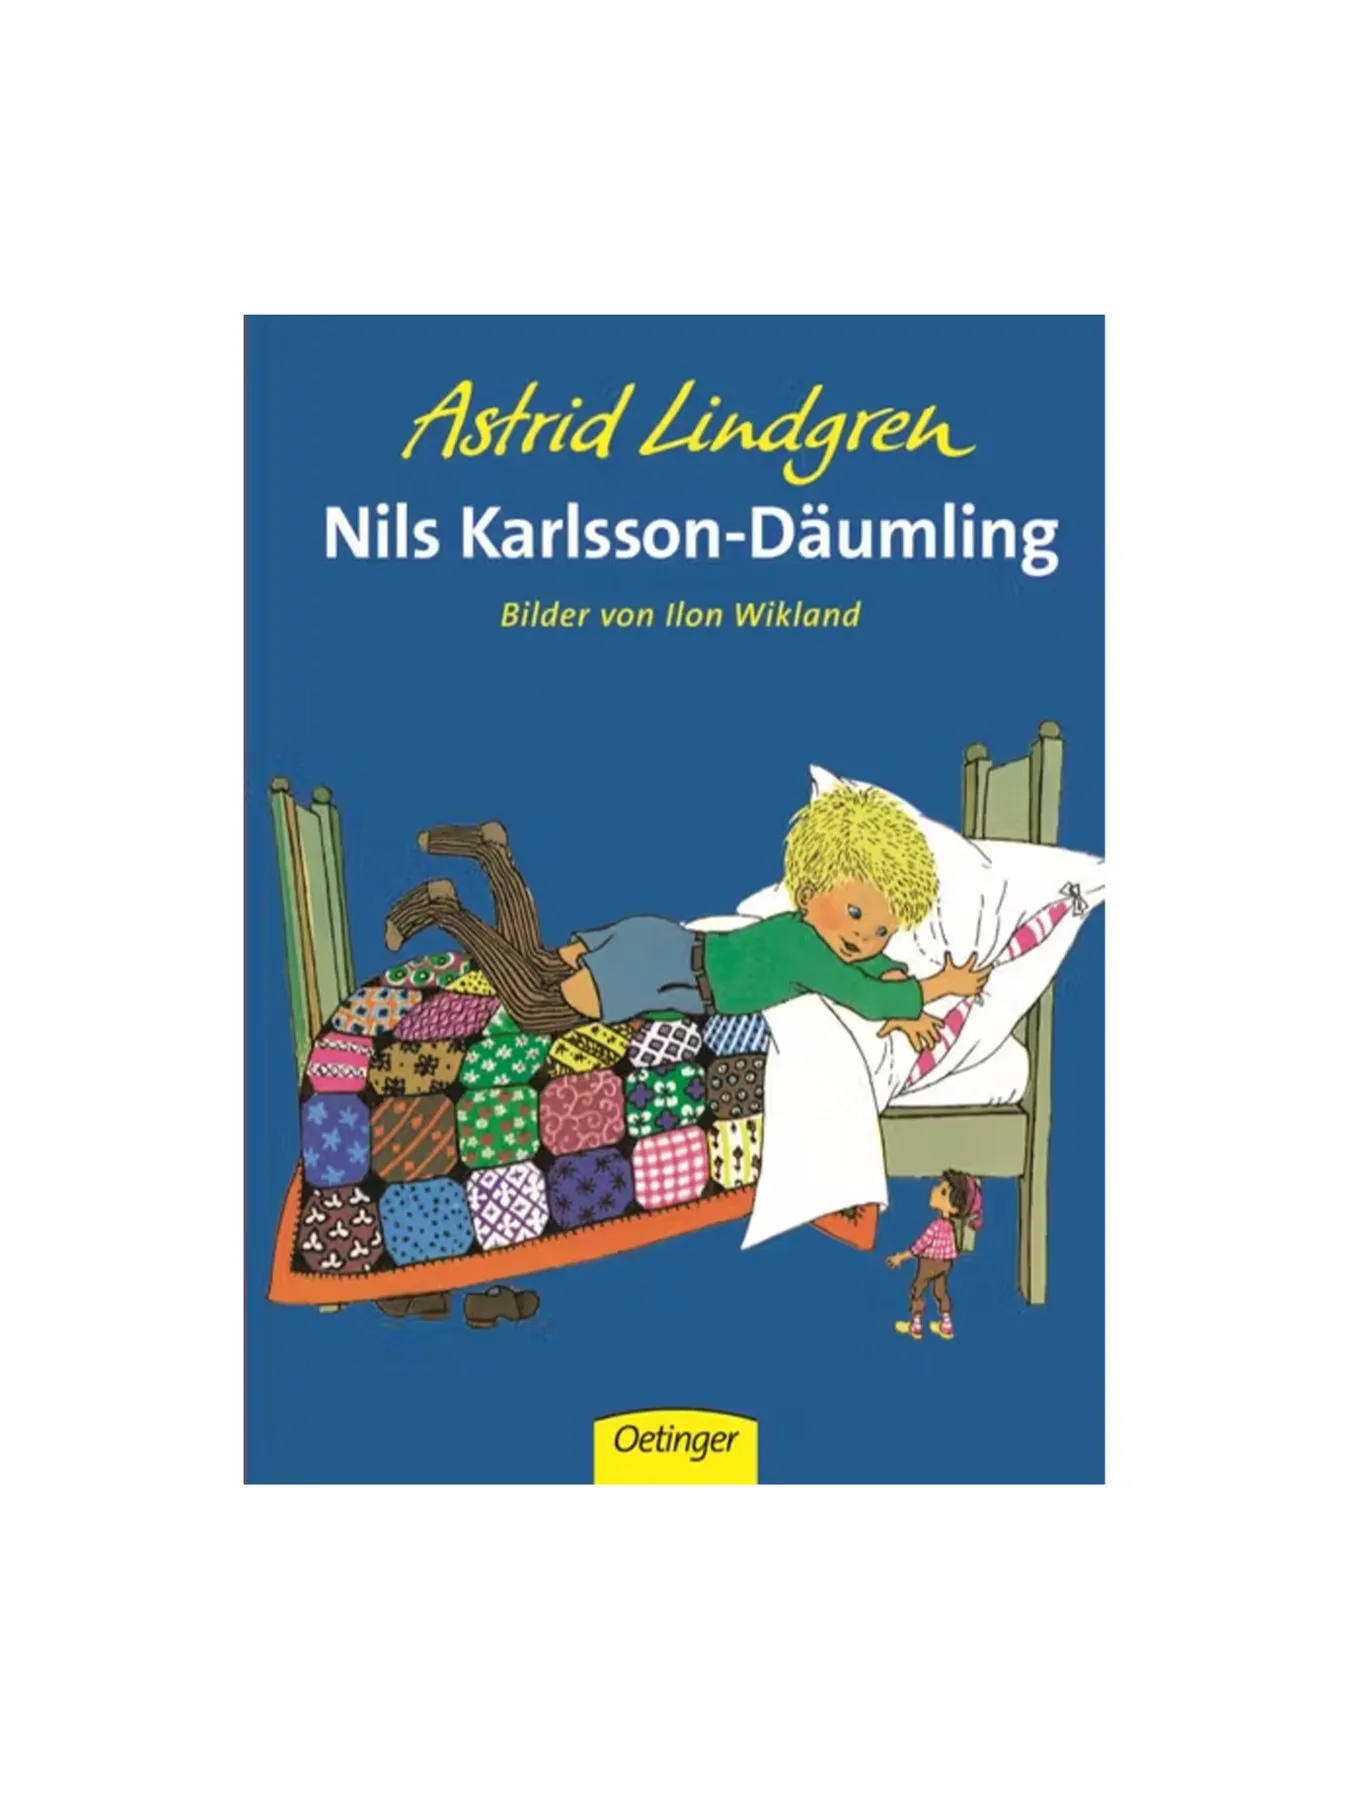 Nils Karlsson-Däumling